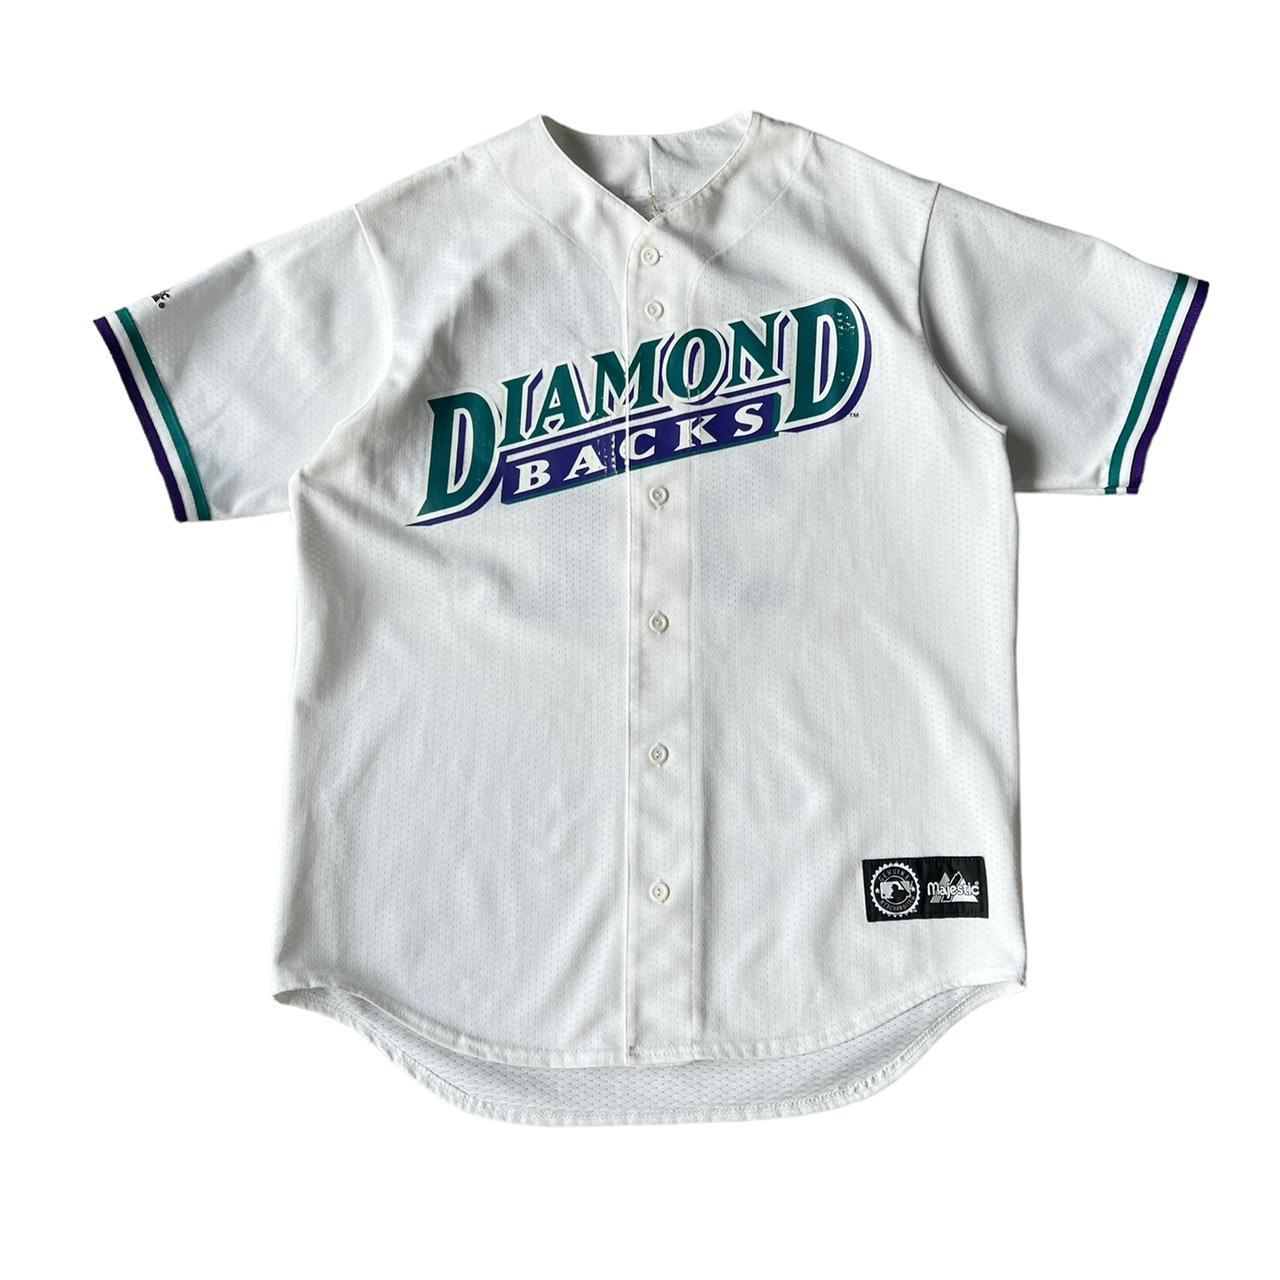 vintage diamondbacks jersey